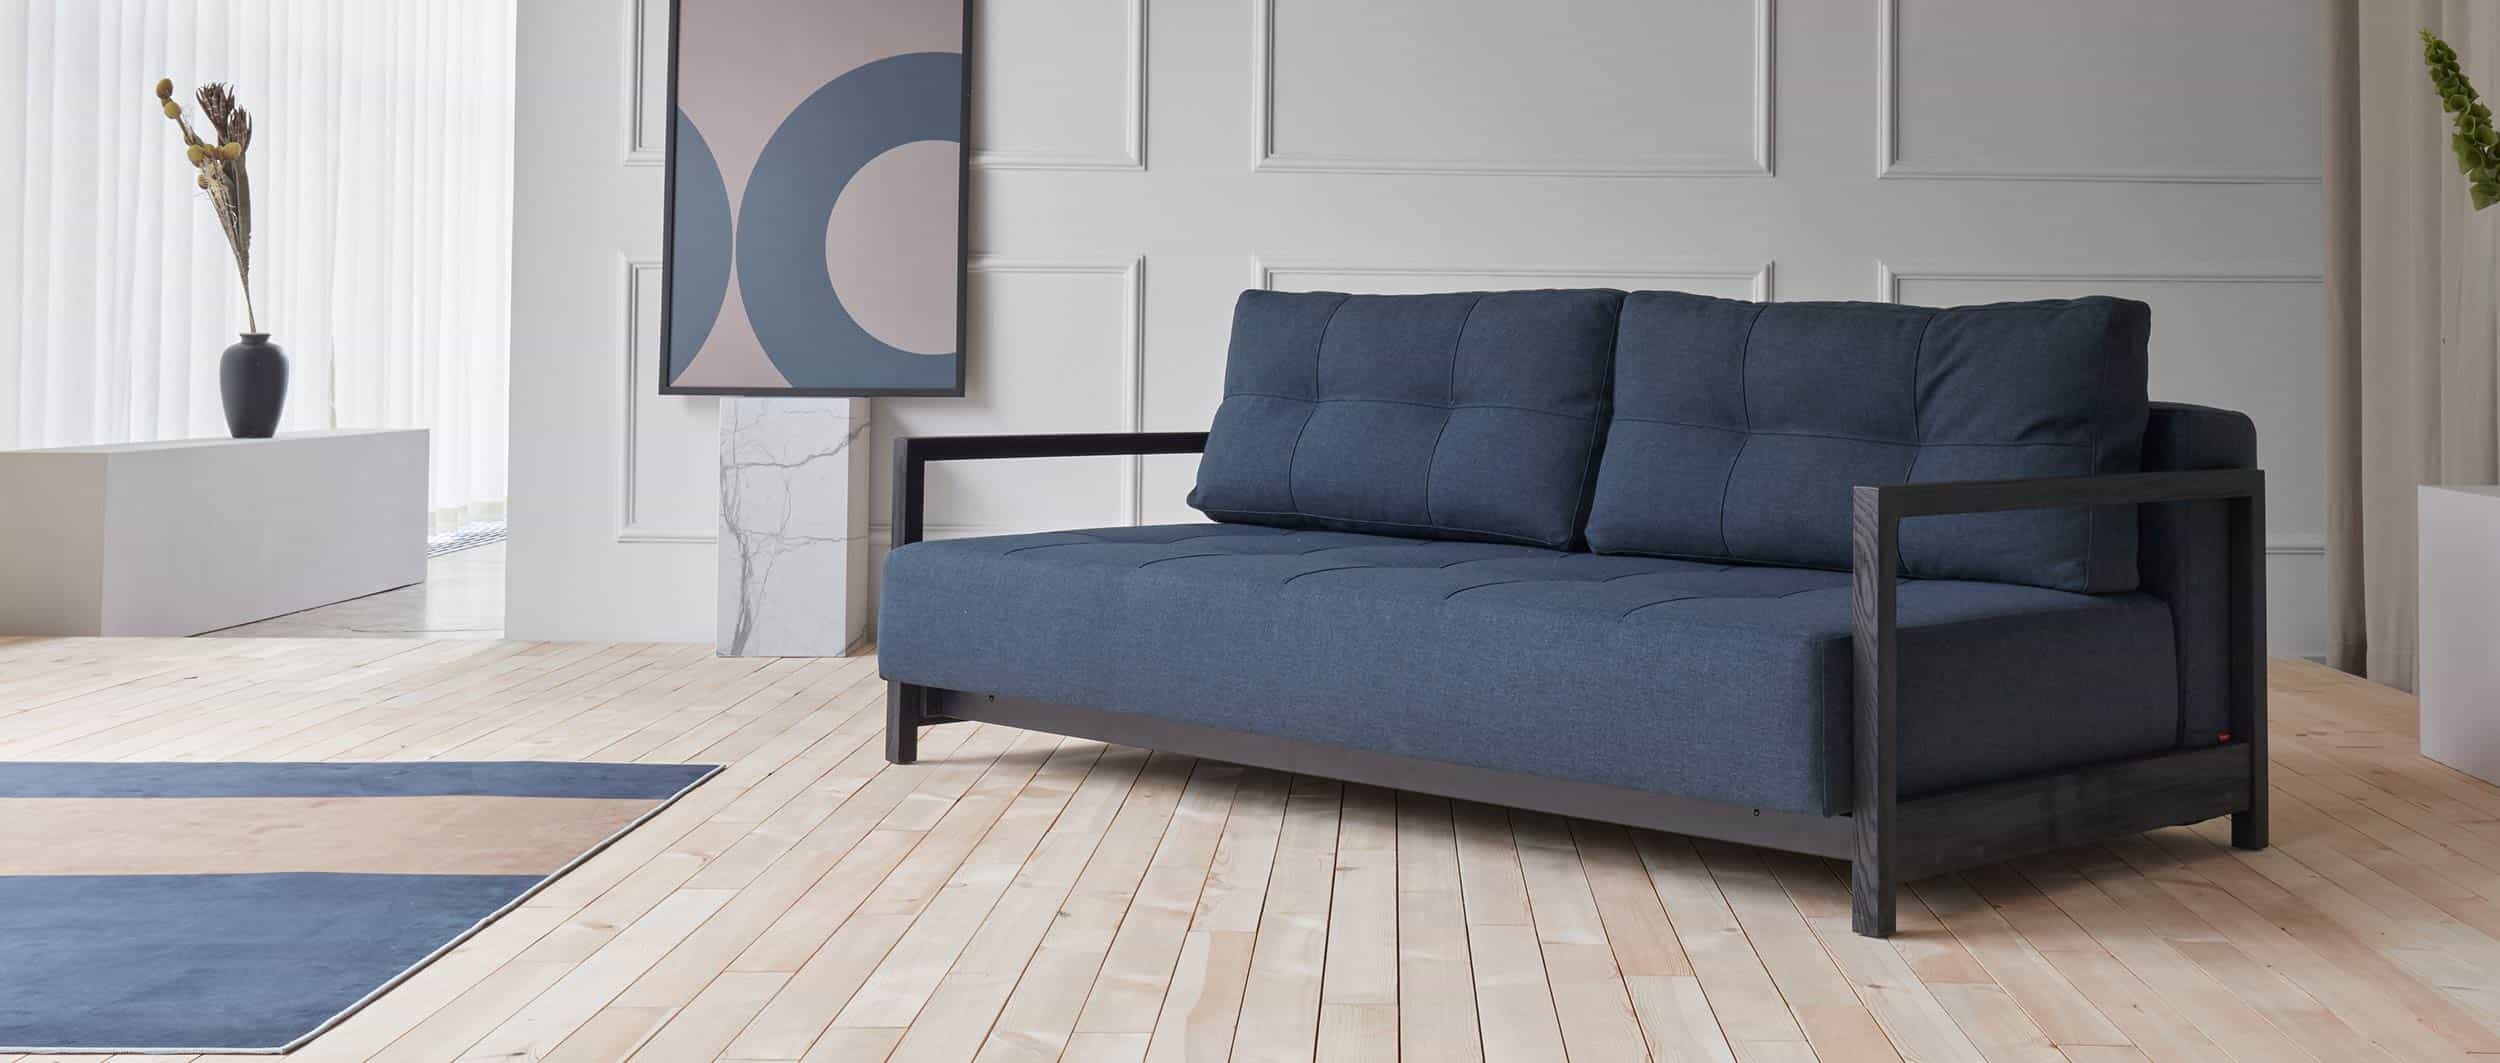 blaues Lounge Sofa mit schwarzen Holzarmlehnen, Gästebett für 2 Personen - 155x200cm